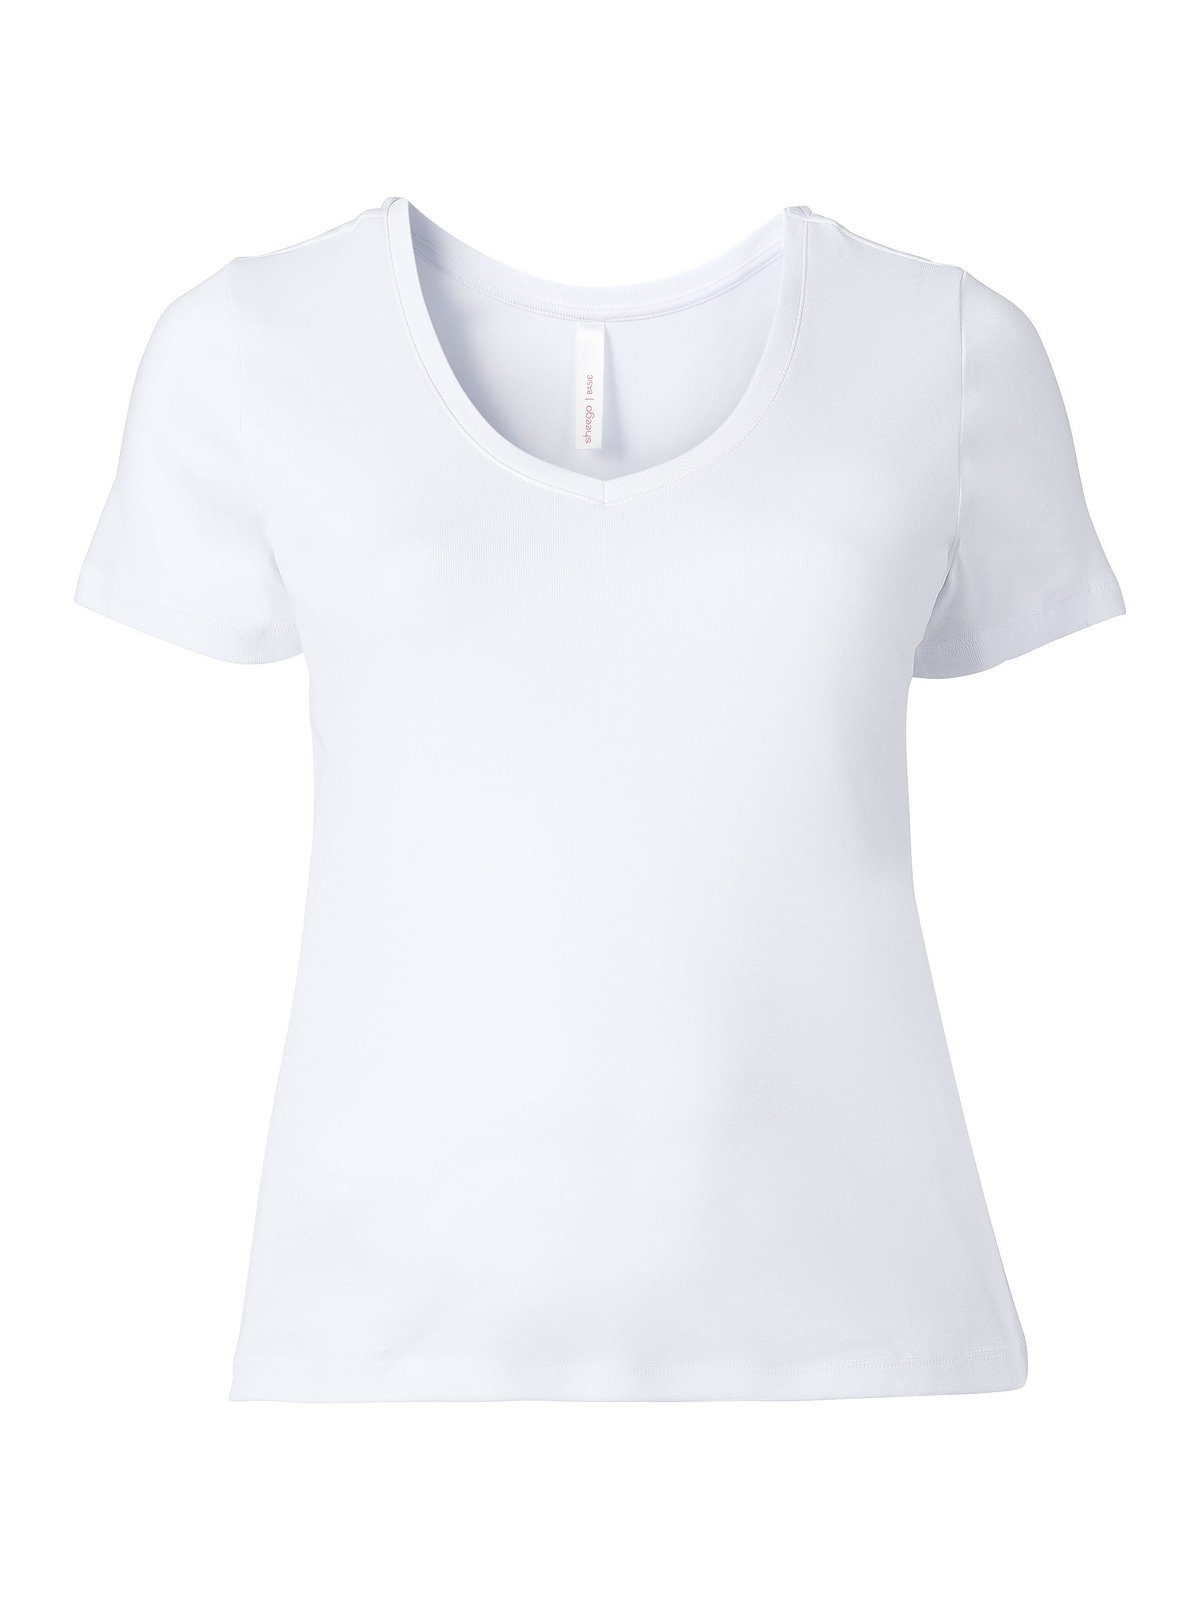 Sheego T-Shirt Große Größen Qualität gerippter weiß aus fein